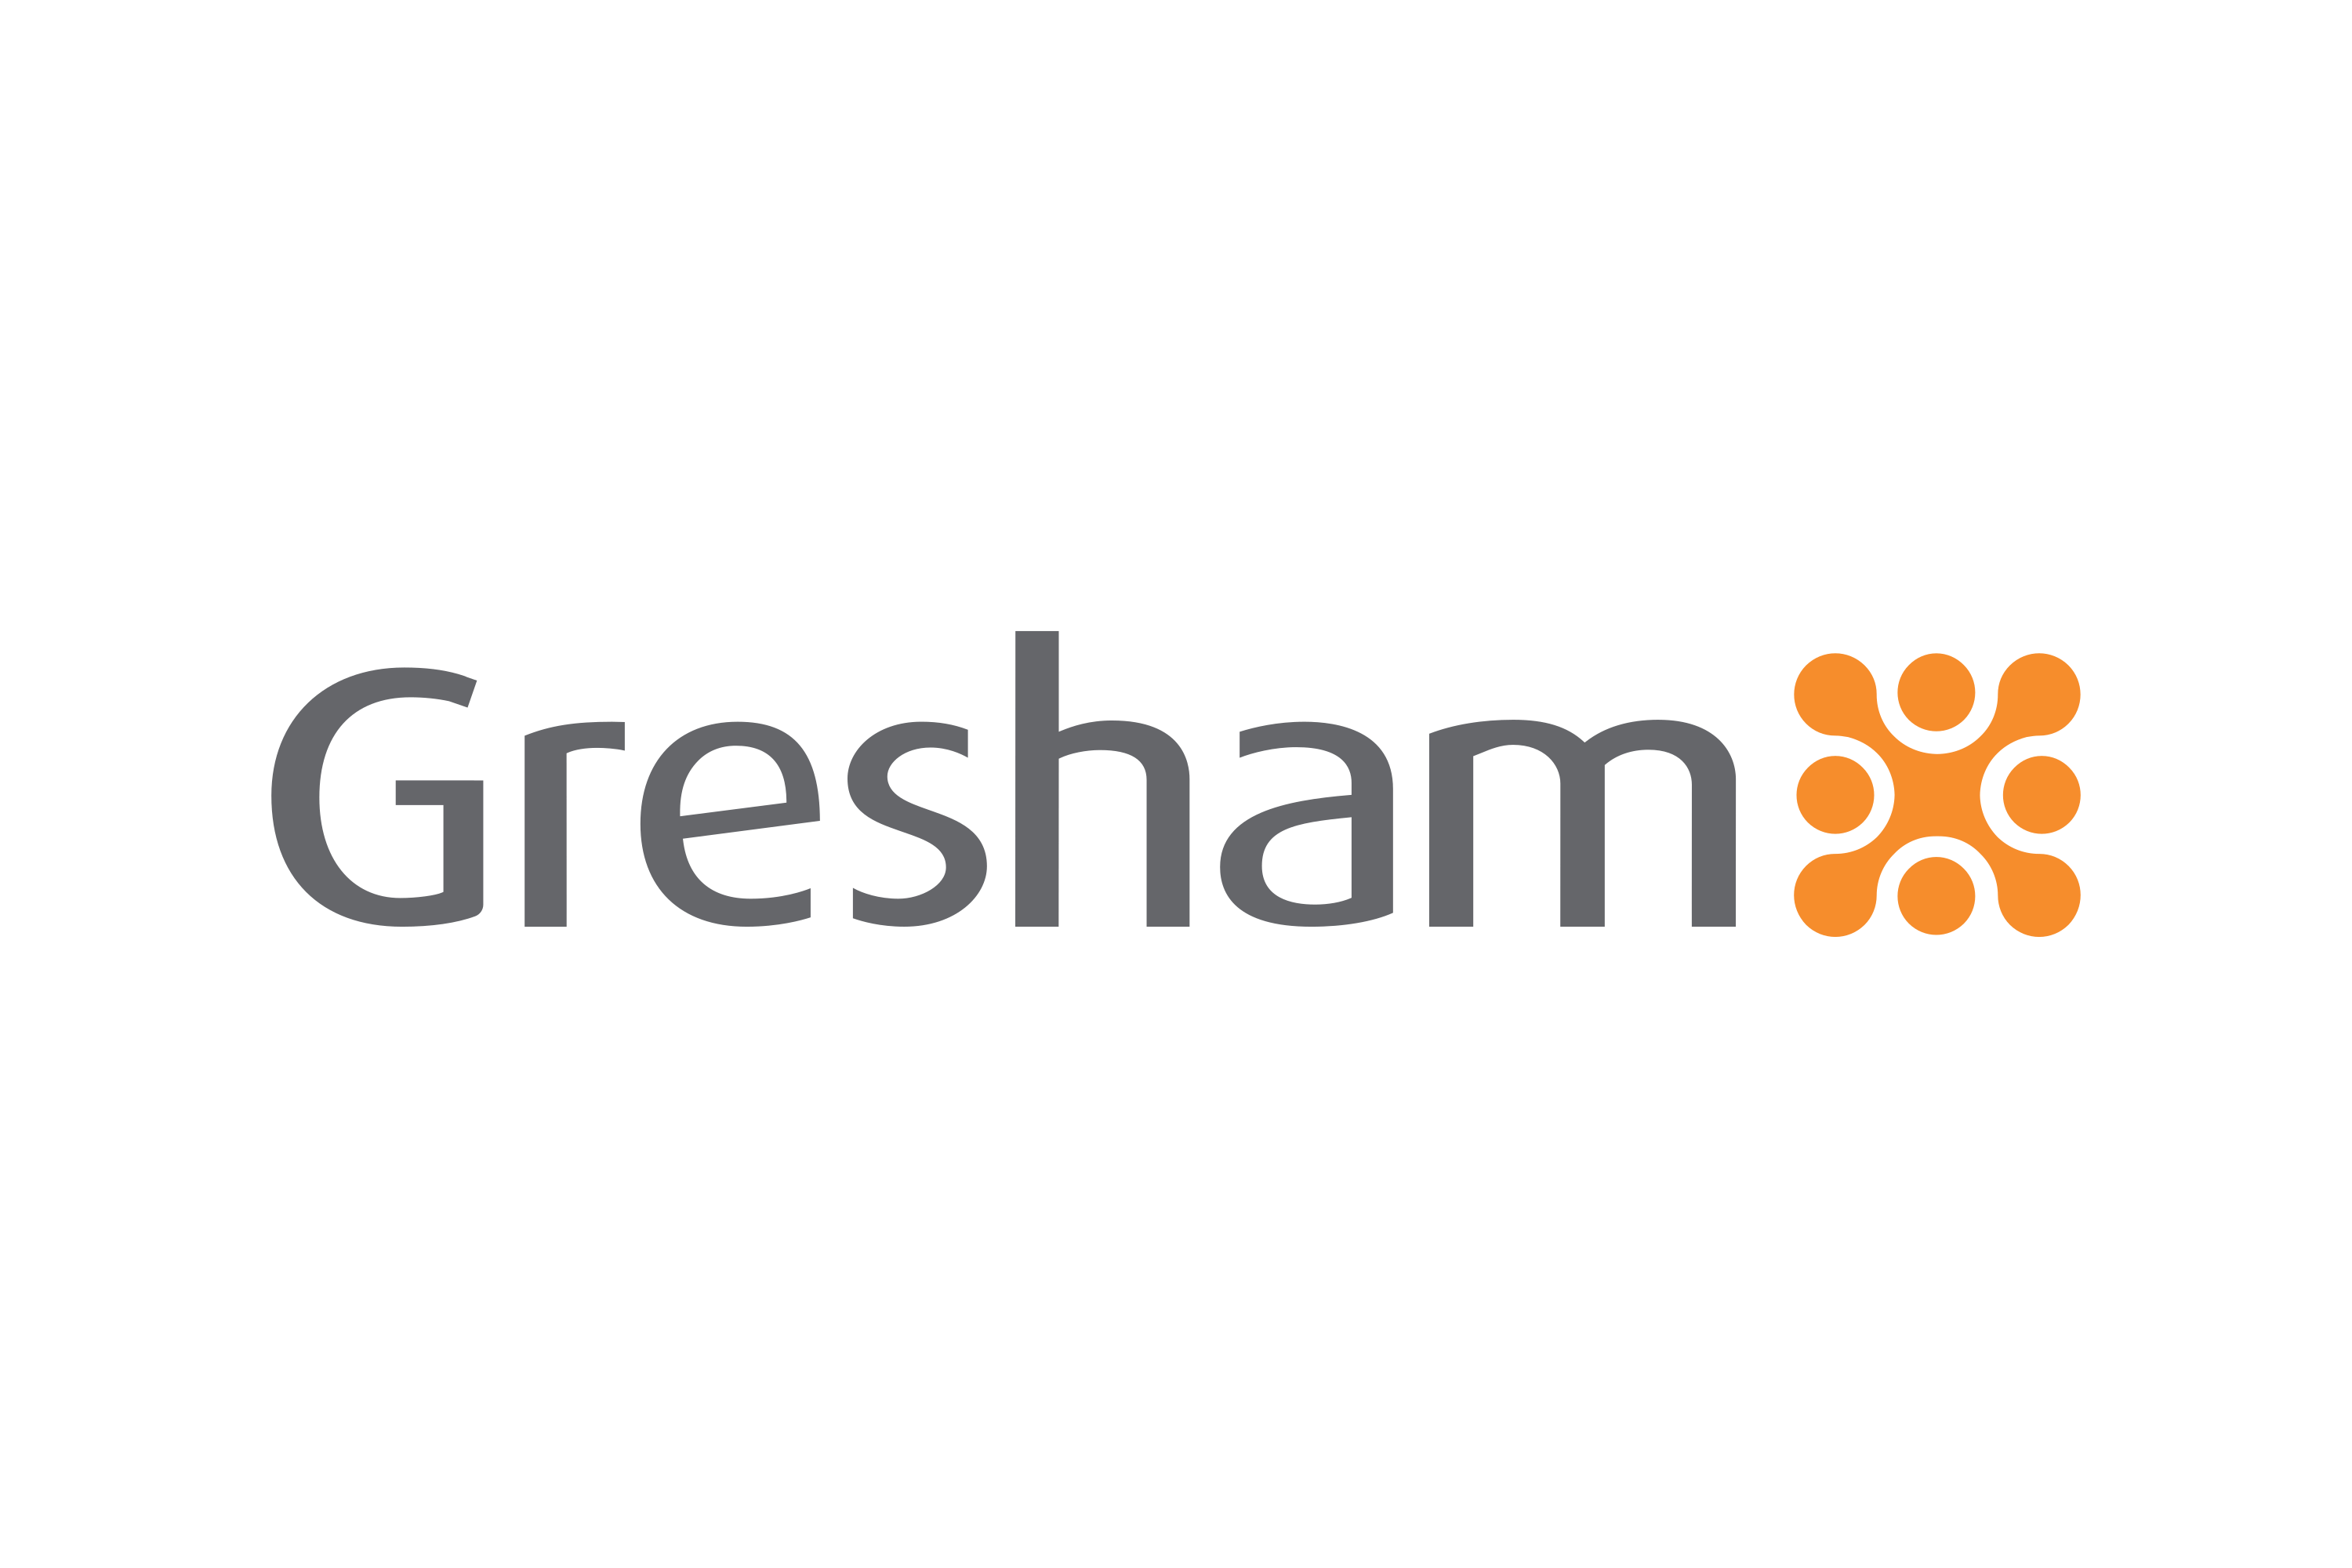 Download Gresham Technologies plc Logo in SVG Vector or PNG File Format